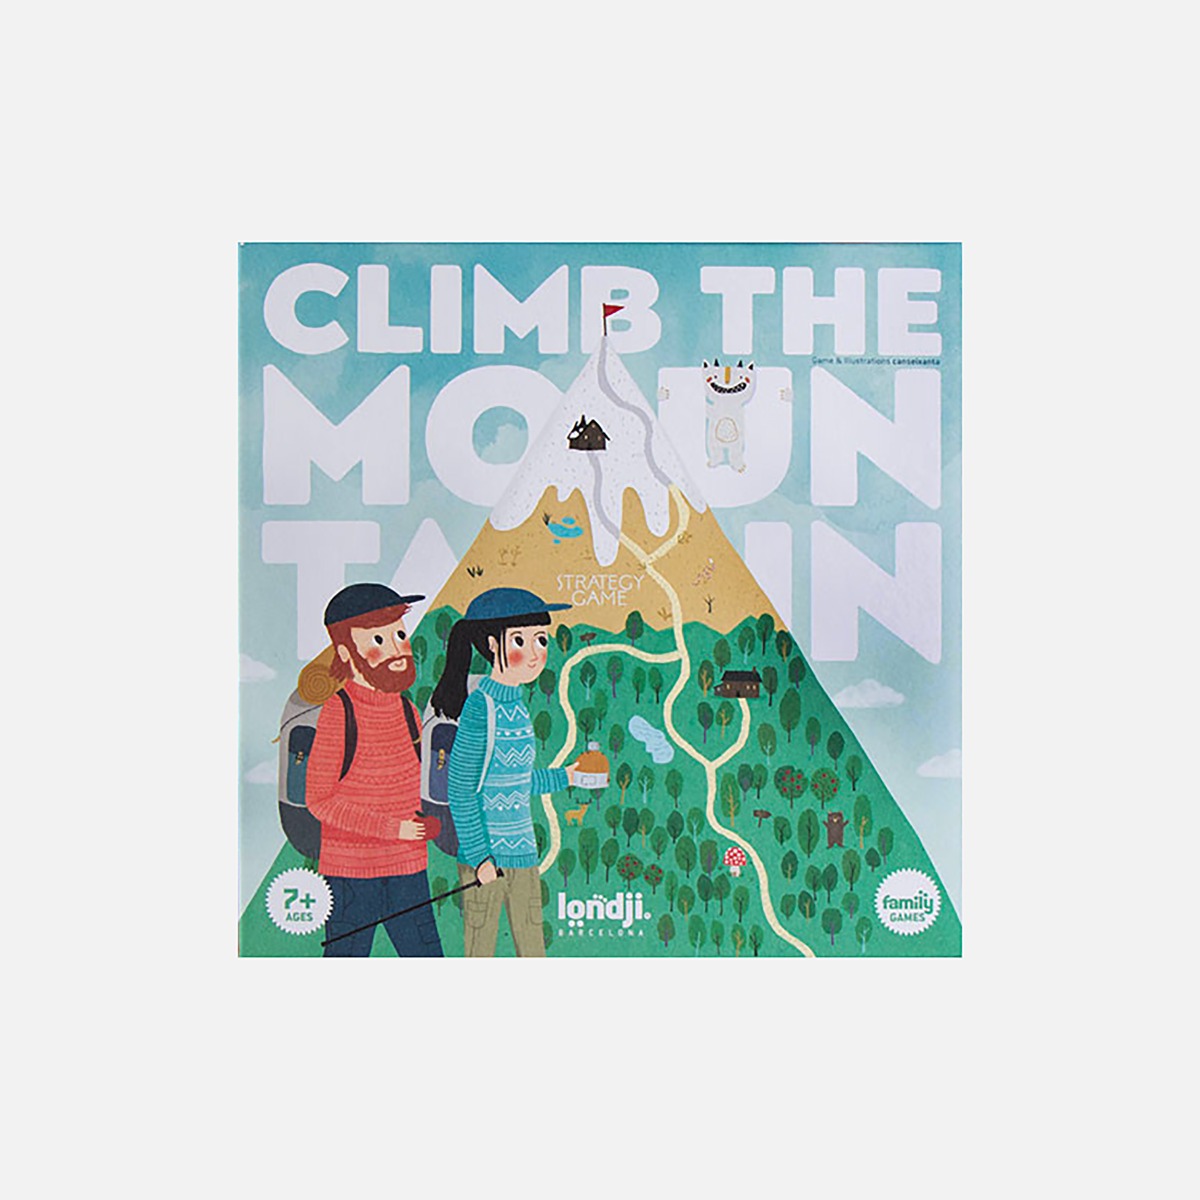 Climb the mountain